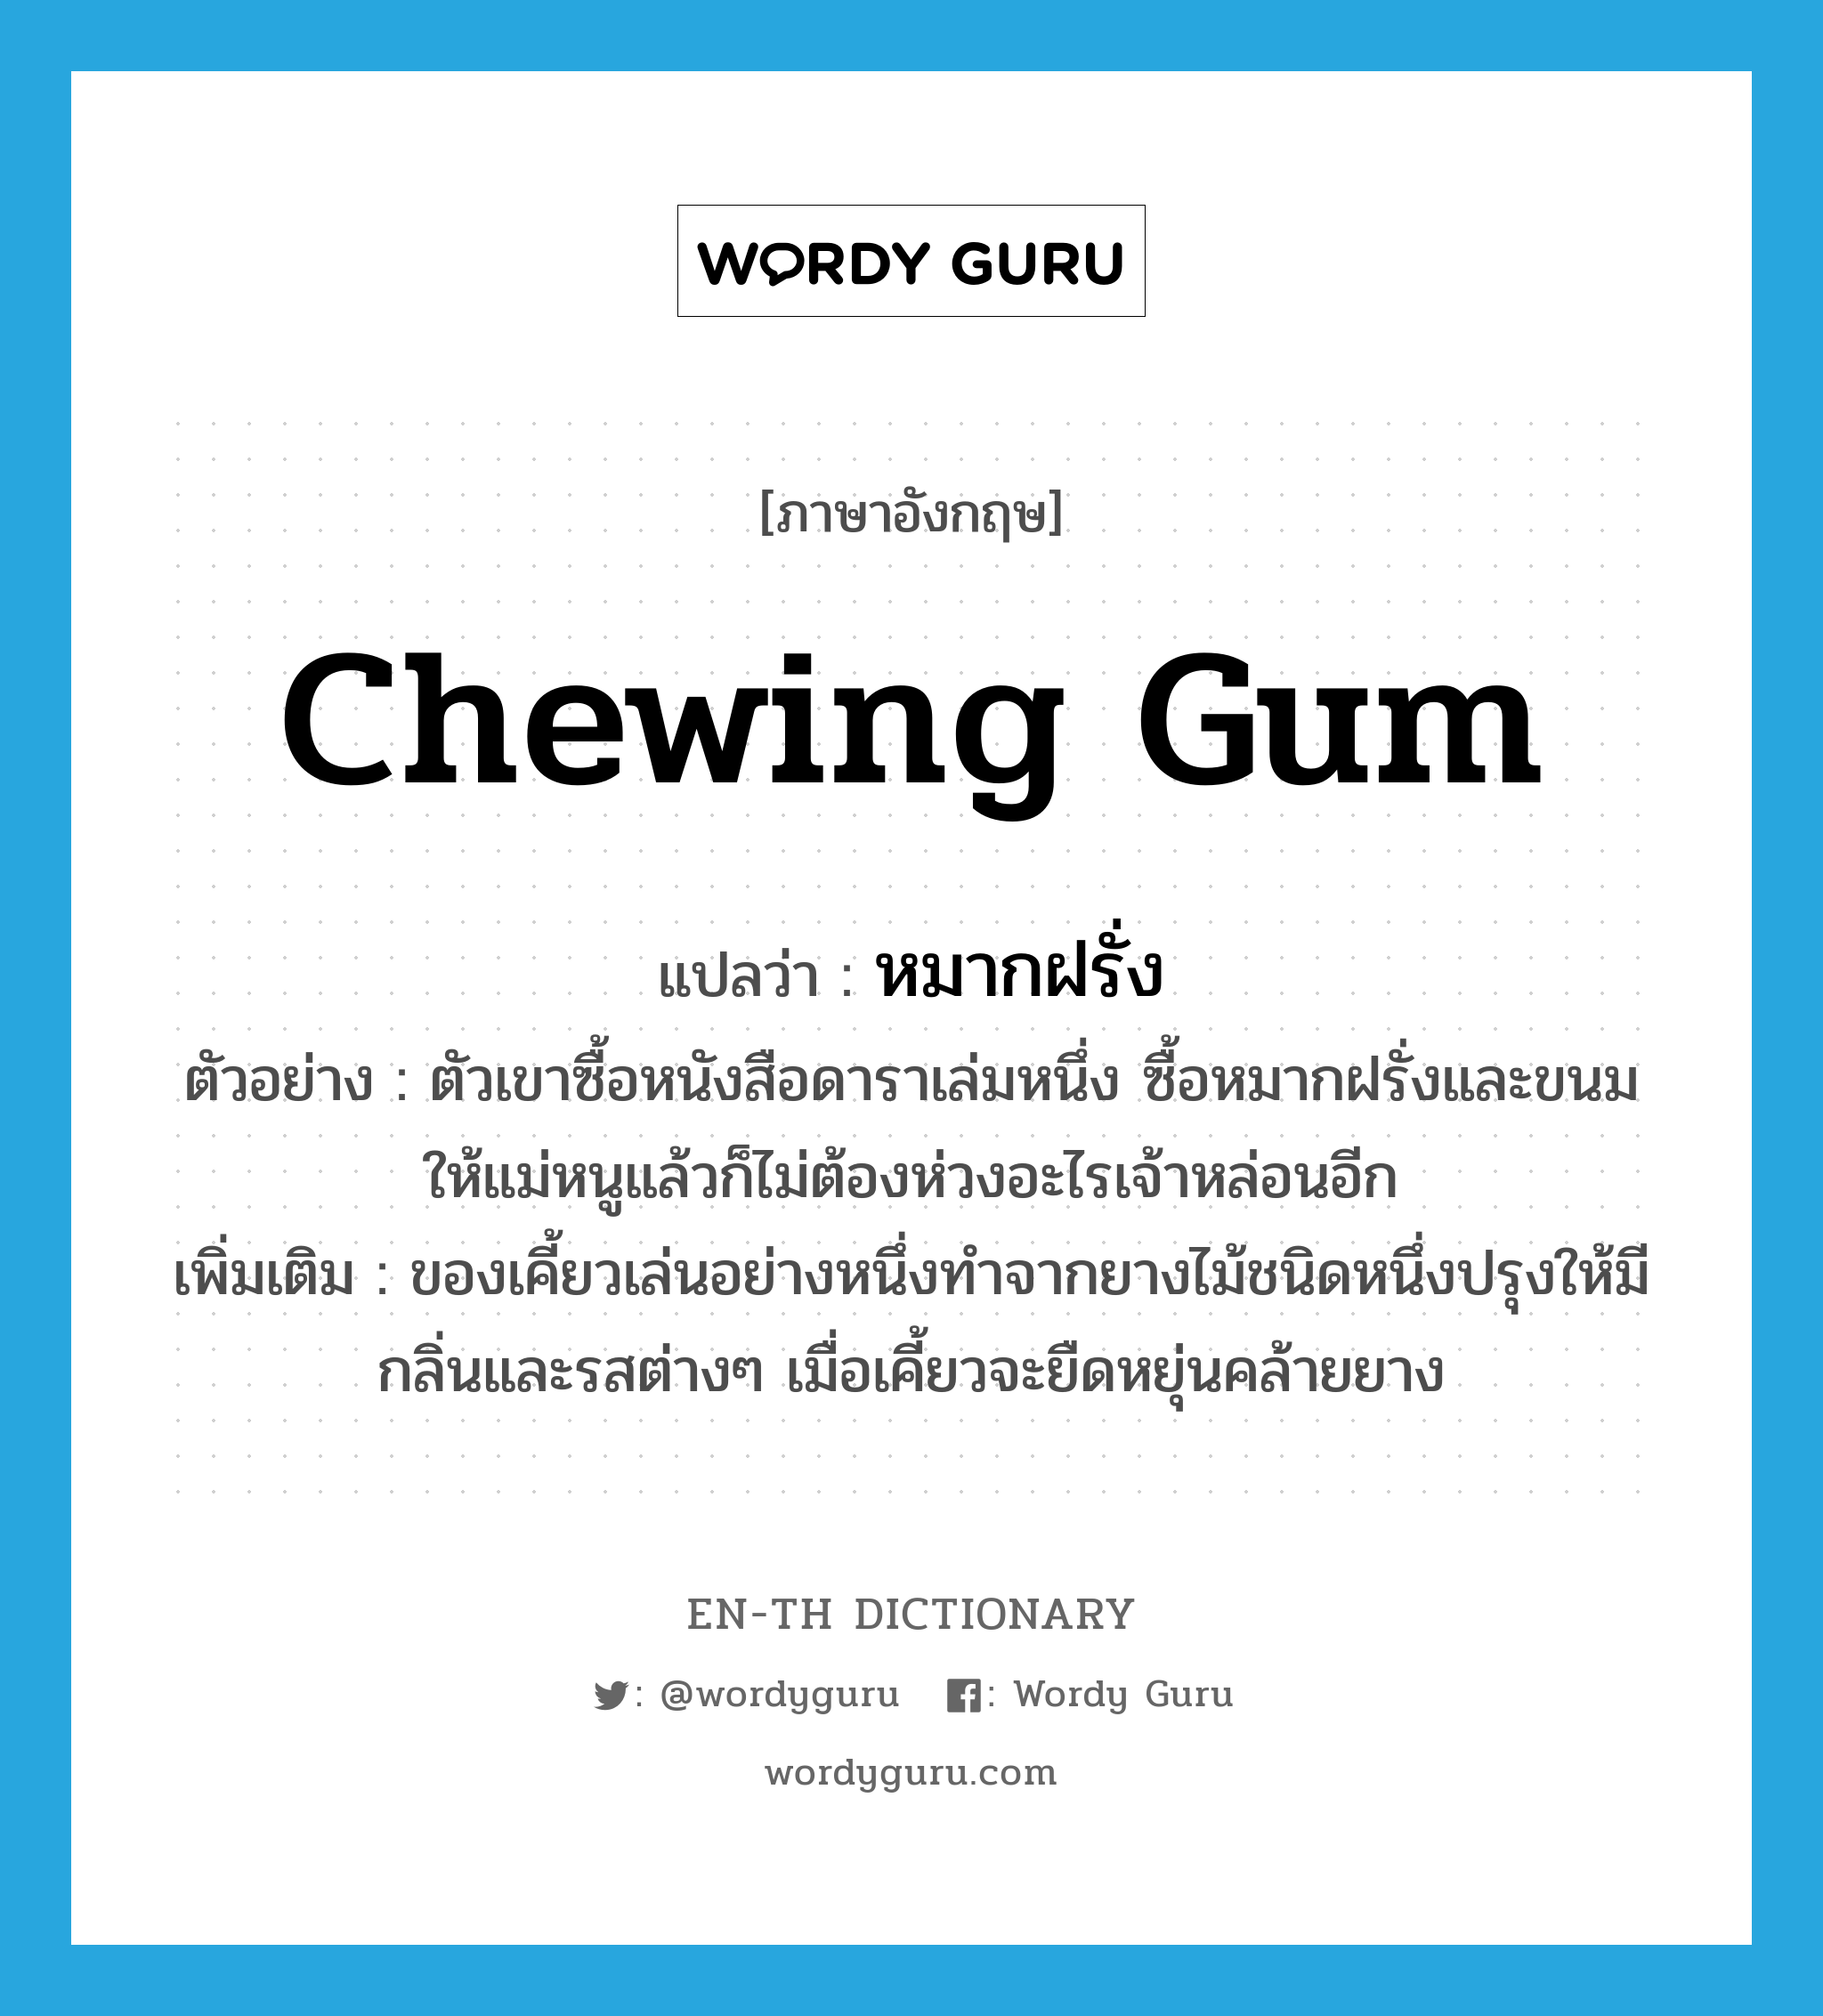 chewing gum แปลว่า?, คำศัพท์ภาษาอังกฤษ chewing gum แปลว่า หมากฝรั่ง ประเภท N ตัวอย่าง ตัวเขาซื้อหนังสือดาราเล่มหนึ่ง ซื้อหมากฝรั่งและขนมให้แม่หนูแล้วก็ไม่ต้องห่วงอะไรเจ้าหล่อนอีก เพิ่มเติม ของเคี้ยวเล่นอย่างหนึ่งทำจากยางไม้ชนิดหนึ่งปรุงให้มีกลิ่นและรสต่างๆ เมื่อเคี้ยวจะยืดหยุ่นคล้ายยาง หมวด N